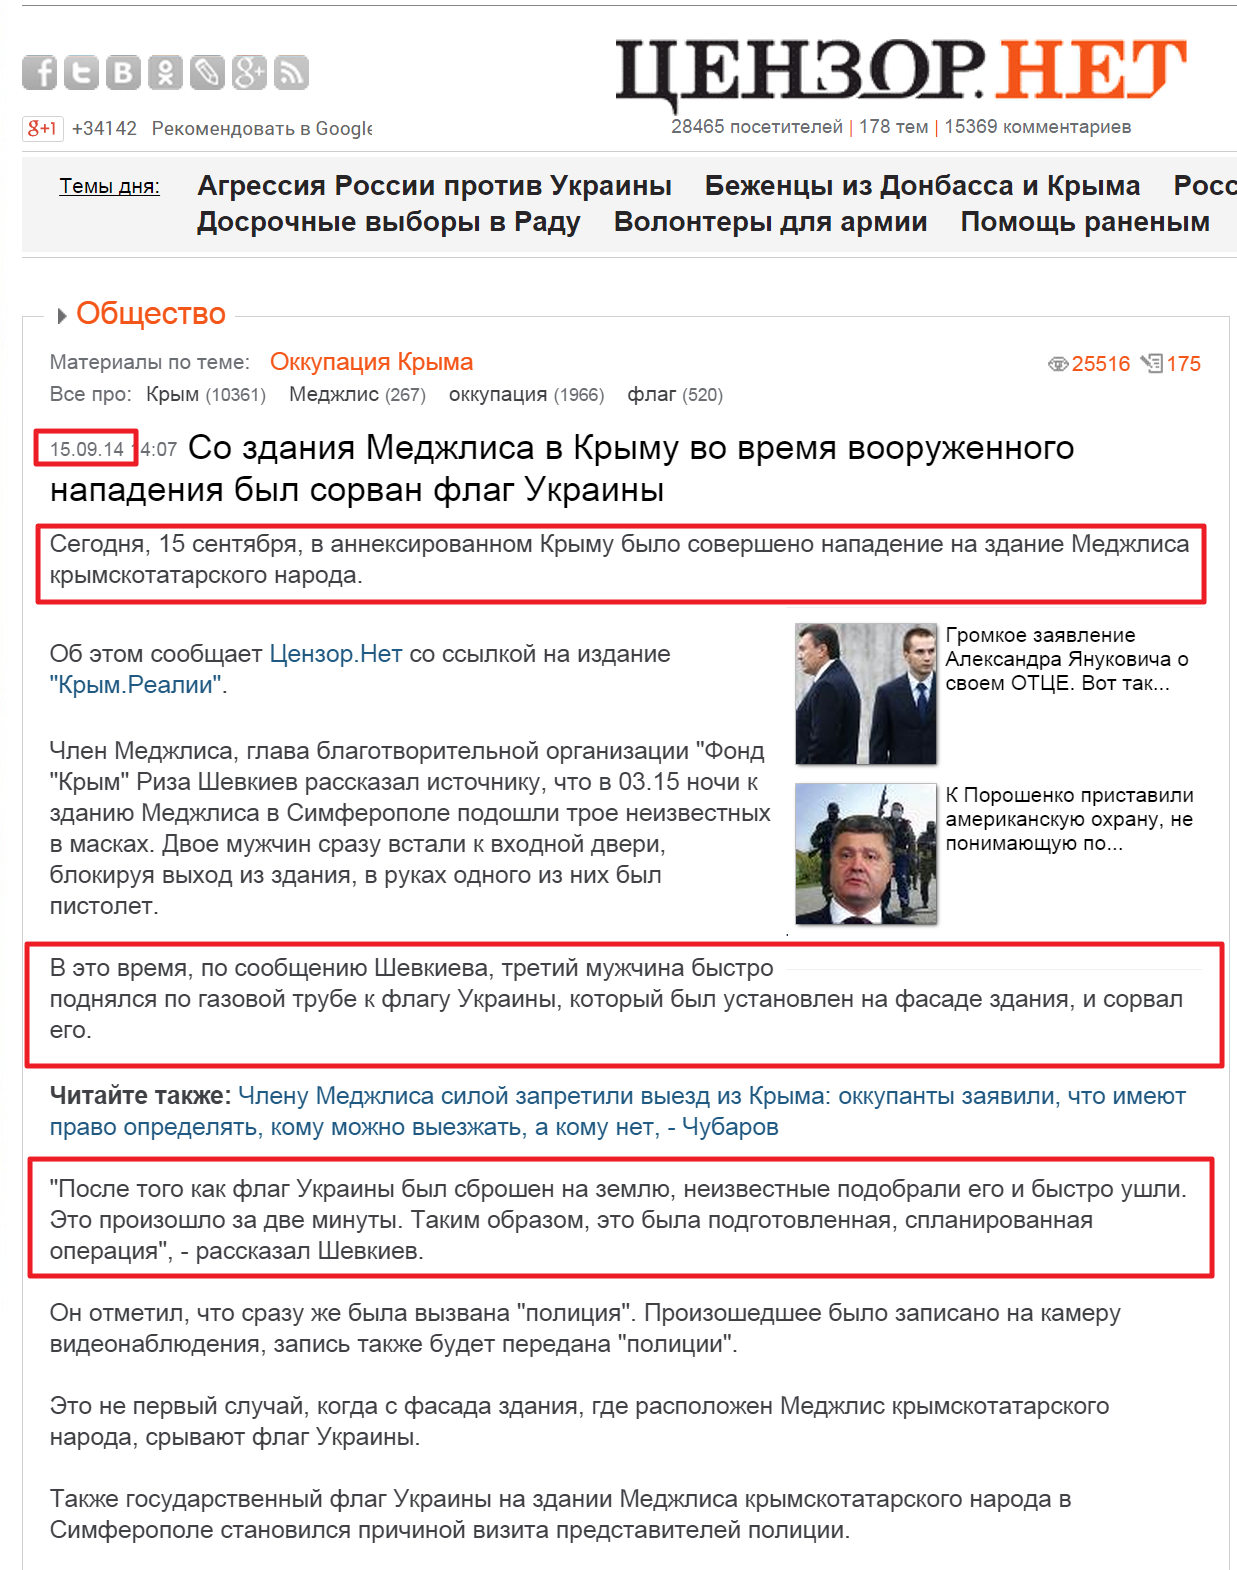 http://censor.net.ua/news/302729/so_zdaniya_medjlisa_v_krymu_vo_vremya_voorujennogo_napadeniya_byl_sorvan_flag_ukrainy